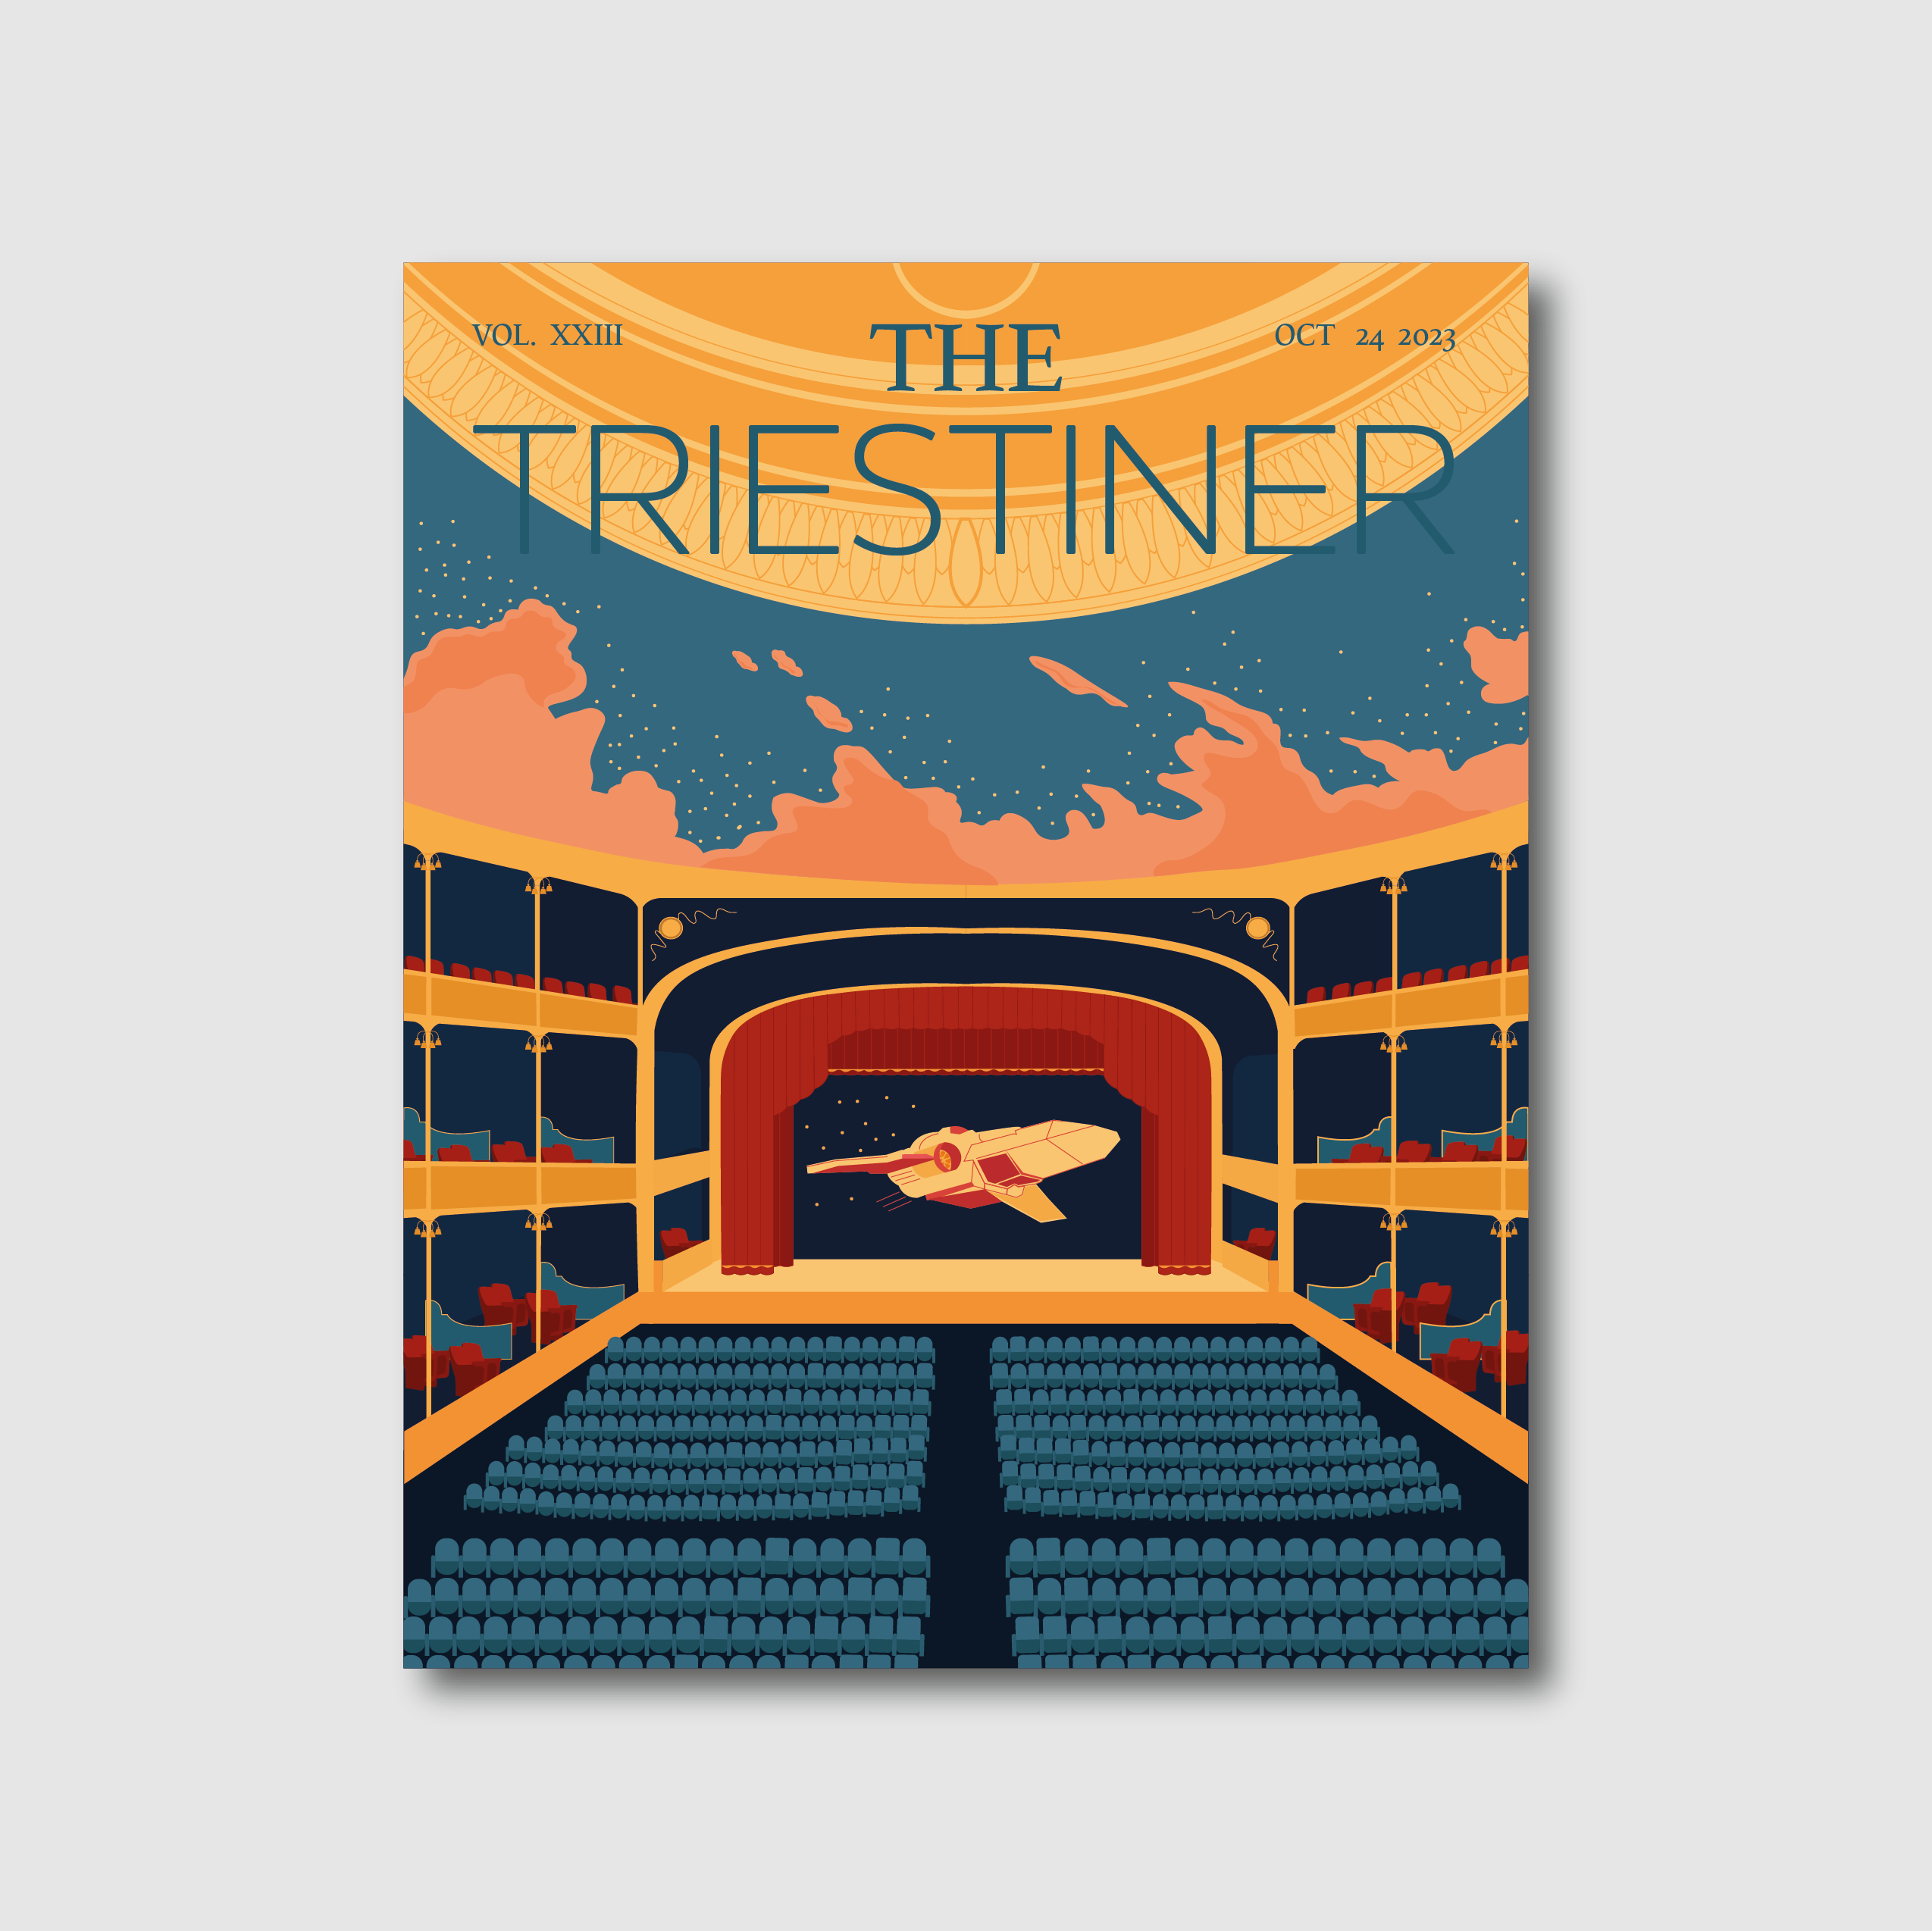 The Triestiner Illustrazione Teatro Rossetti